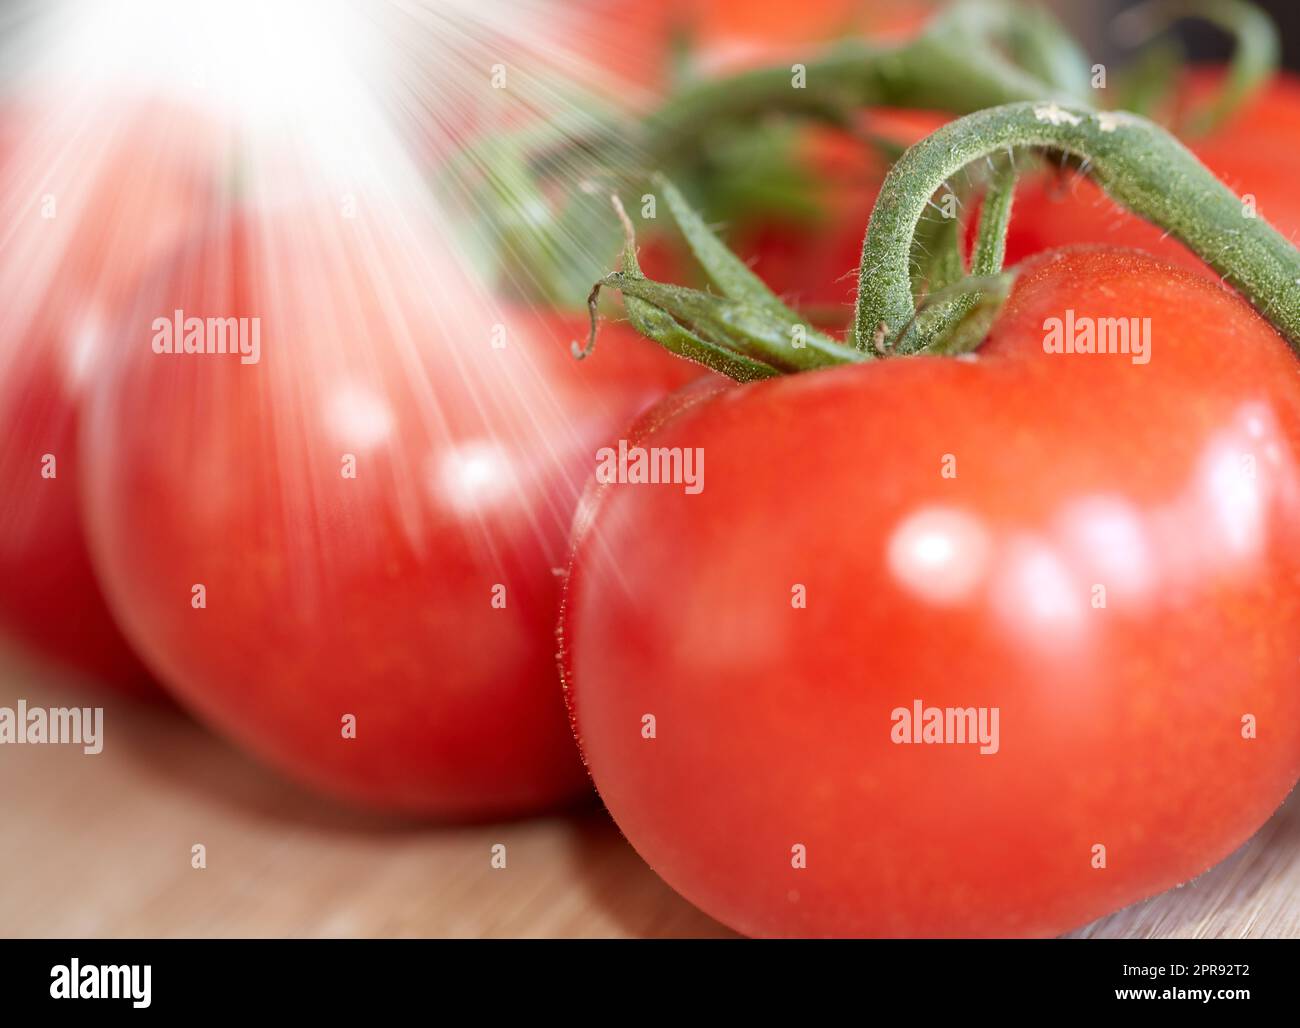 Nahaufnahme frischer Tomaten, mit Wasser gewaschen. Eine Gruppe von gesunden roten Tomaten oder geernteten Früchten, perfekt für rohe Sommersalate, eine Mahlzeit oder als leichter Snack. Reinigung von Bio-Produkten unter fließendem Wasser Stockfoto